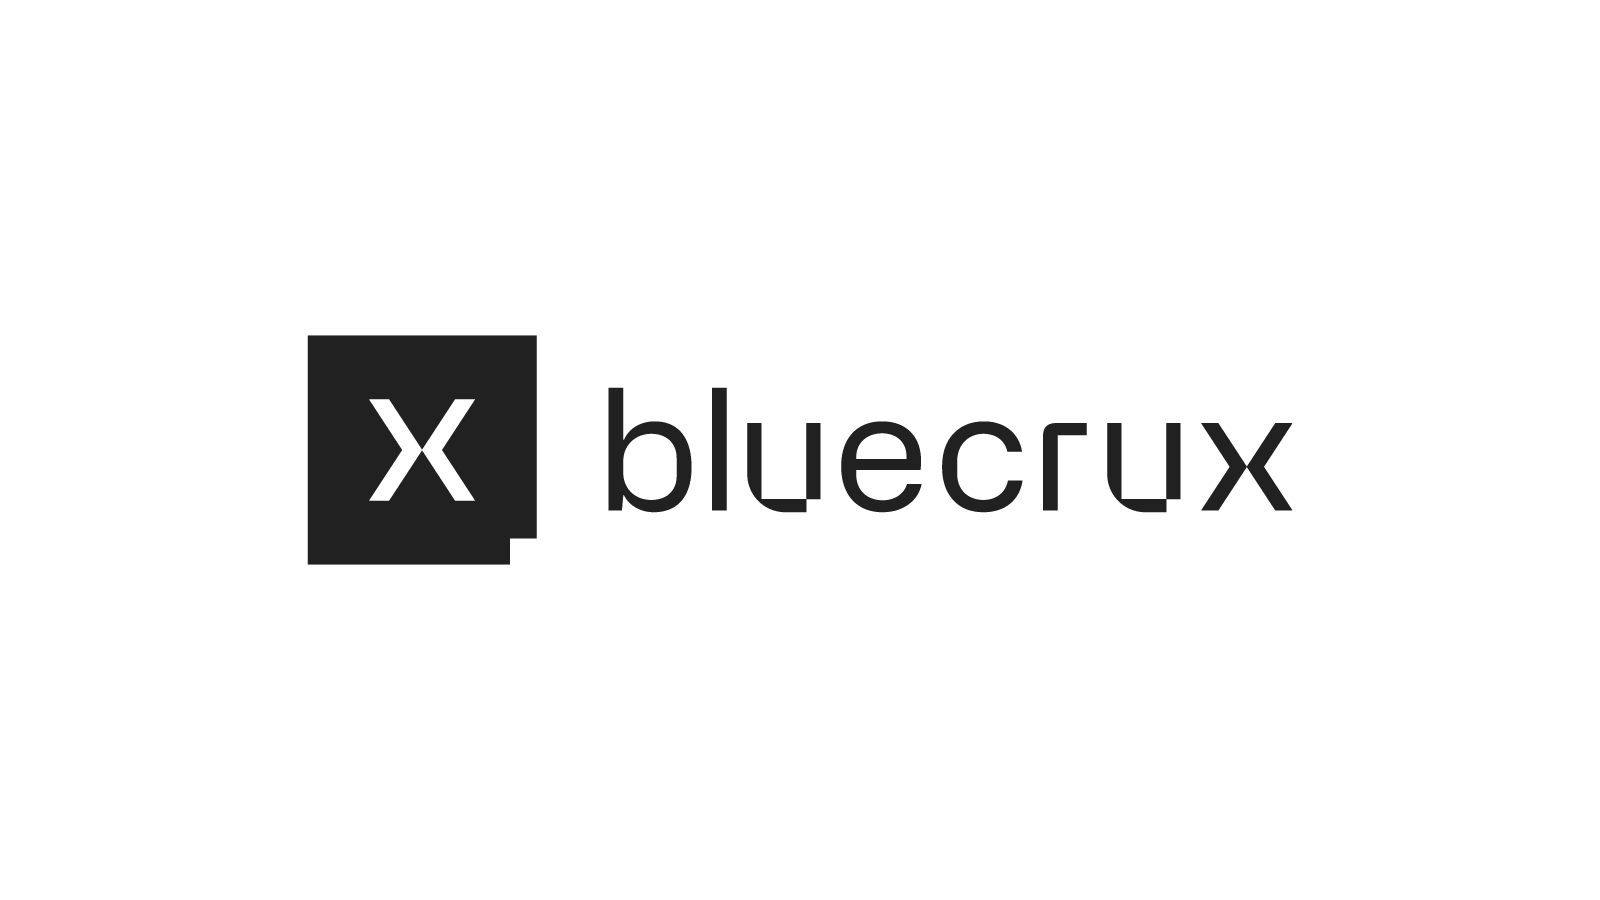 bluecrux logo